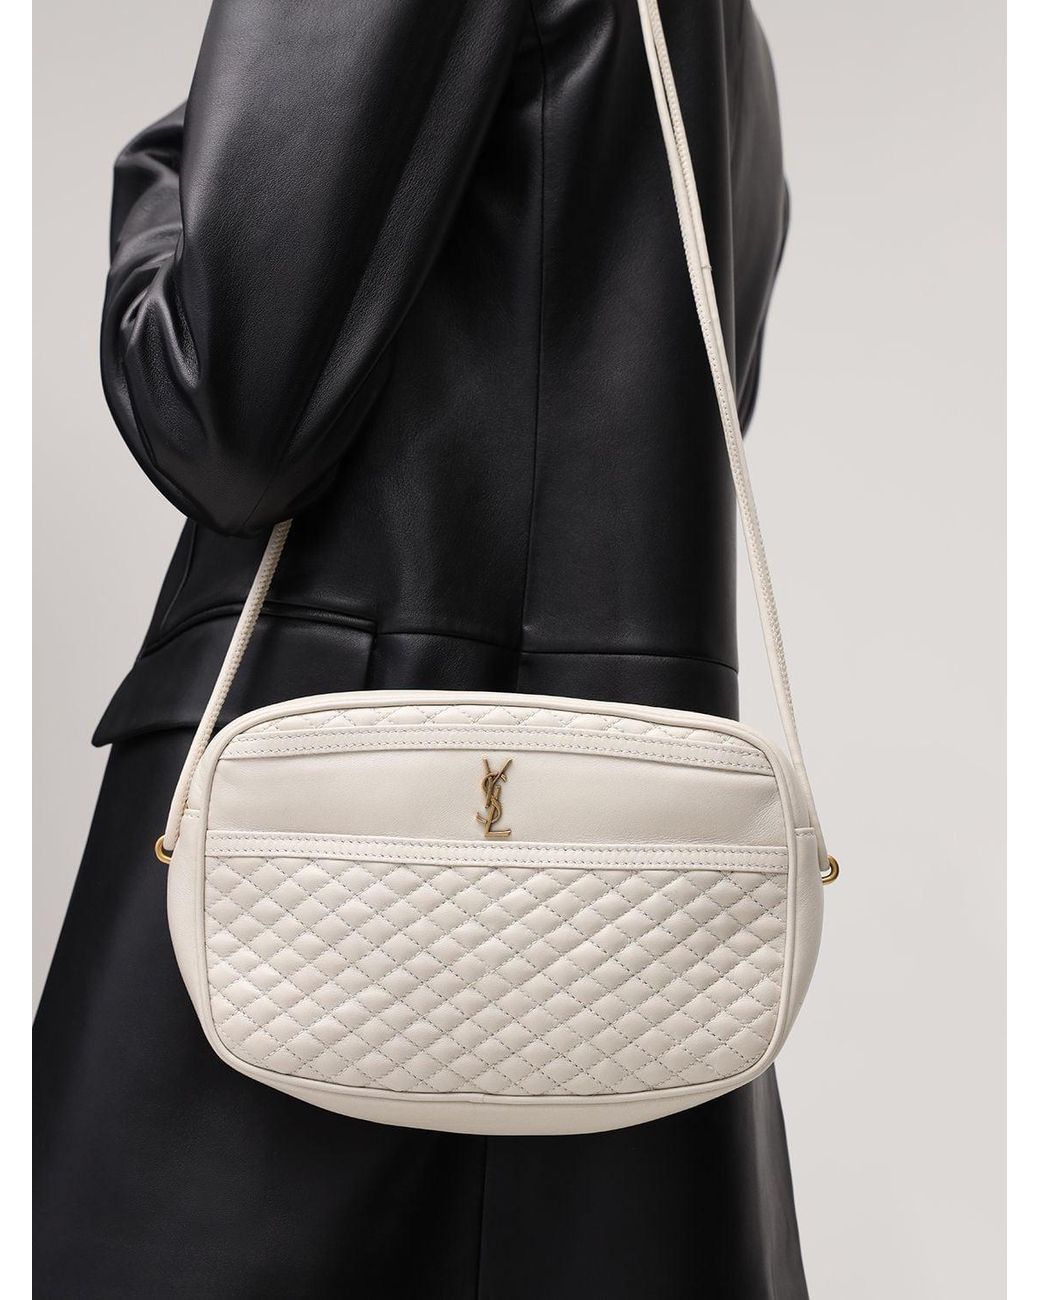 Yves Saint Laurent Victoire Camera Shoulder Bag